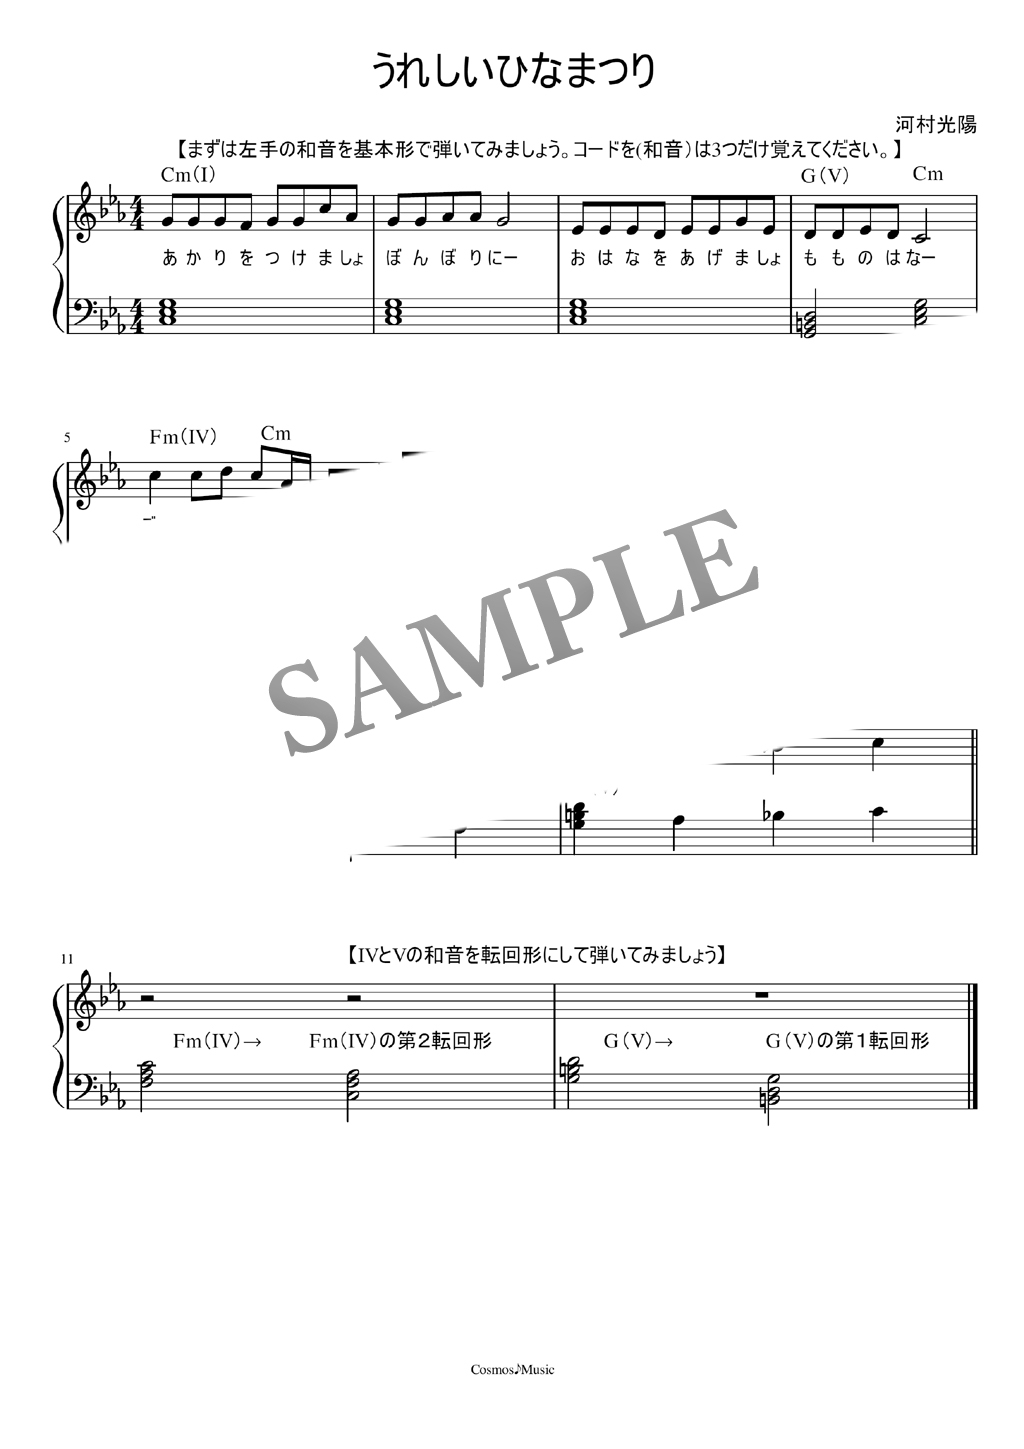 うれしいひなまつり 歌詞 説明付きpiano ピアノ 楽譜 Sheet Music Mucome 音楽 楽譜の投稿ダウンロードサイト